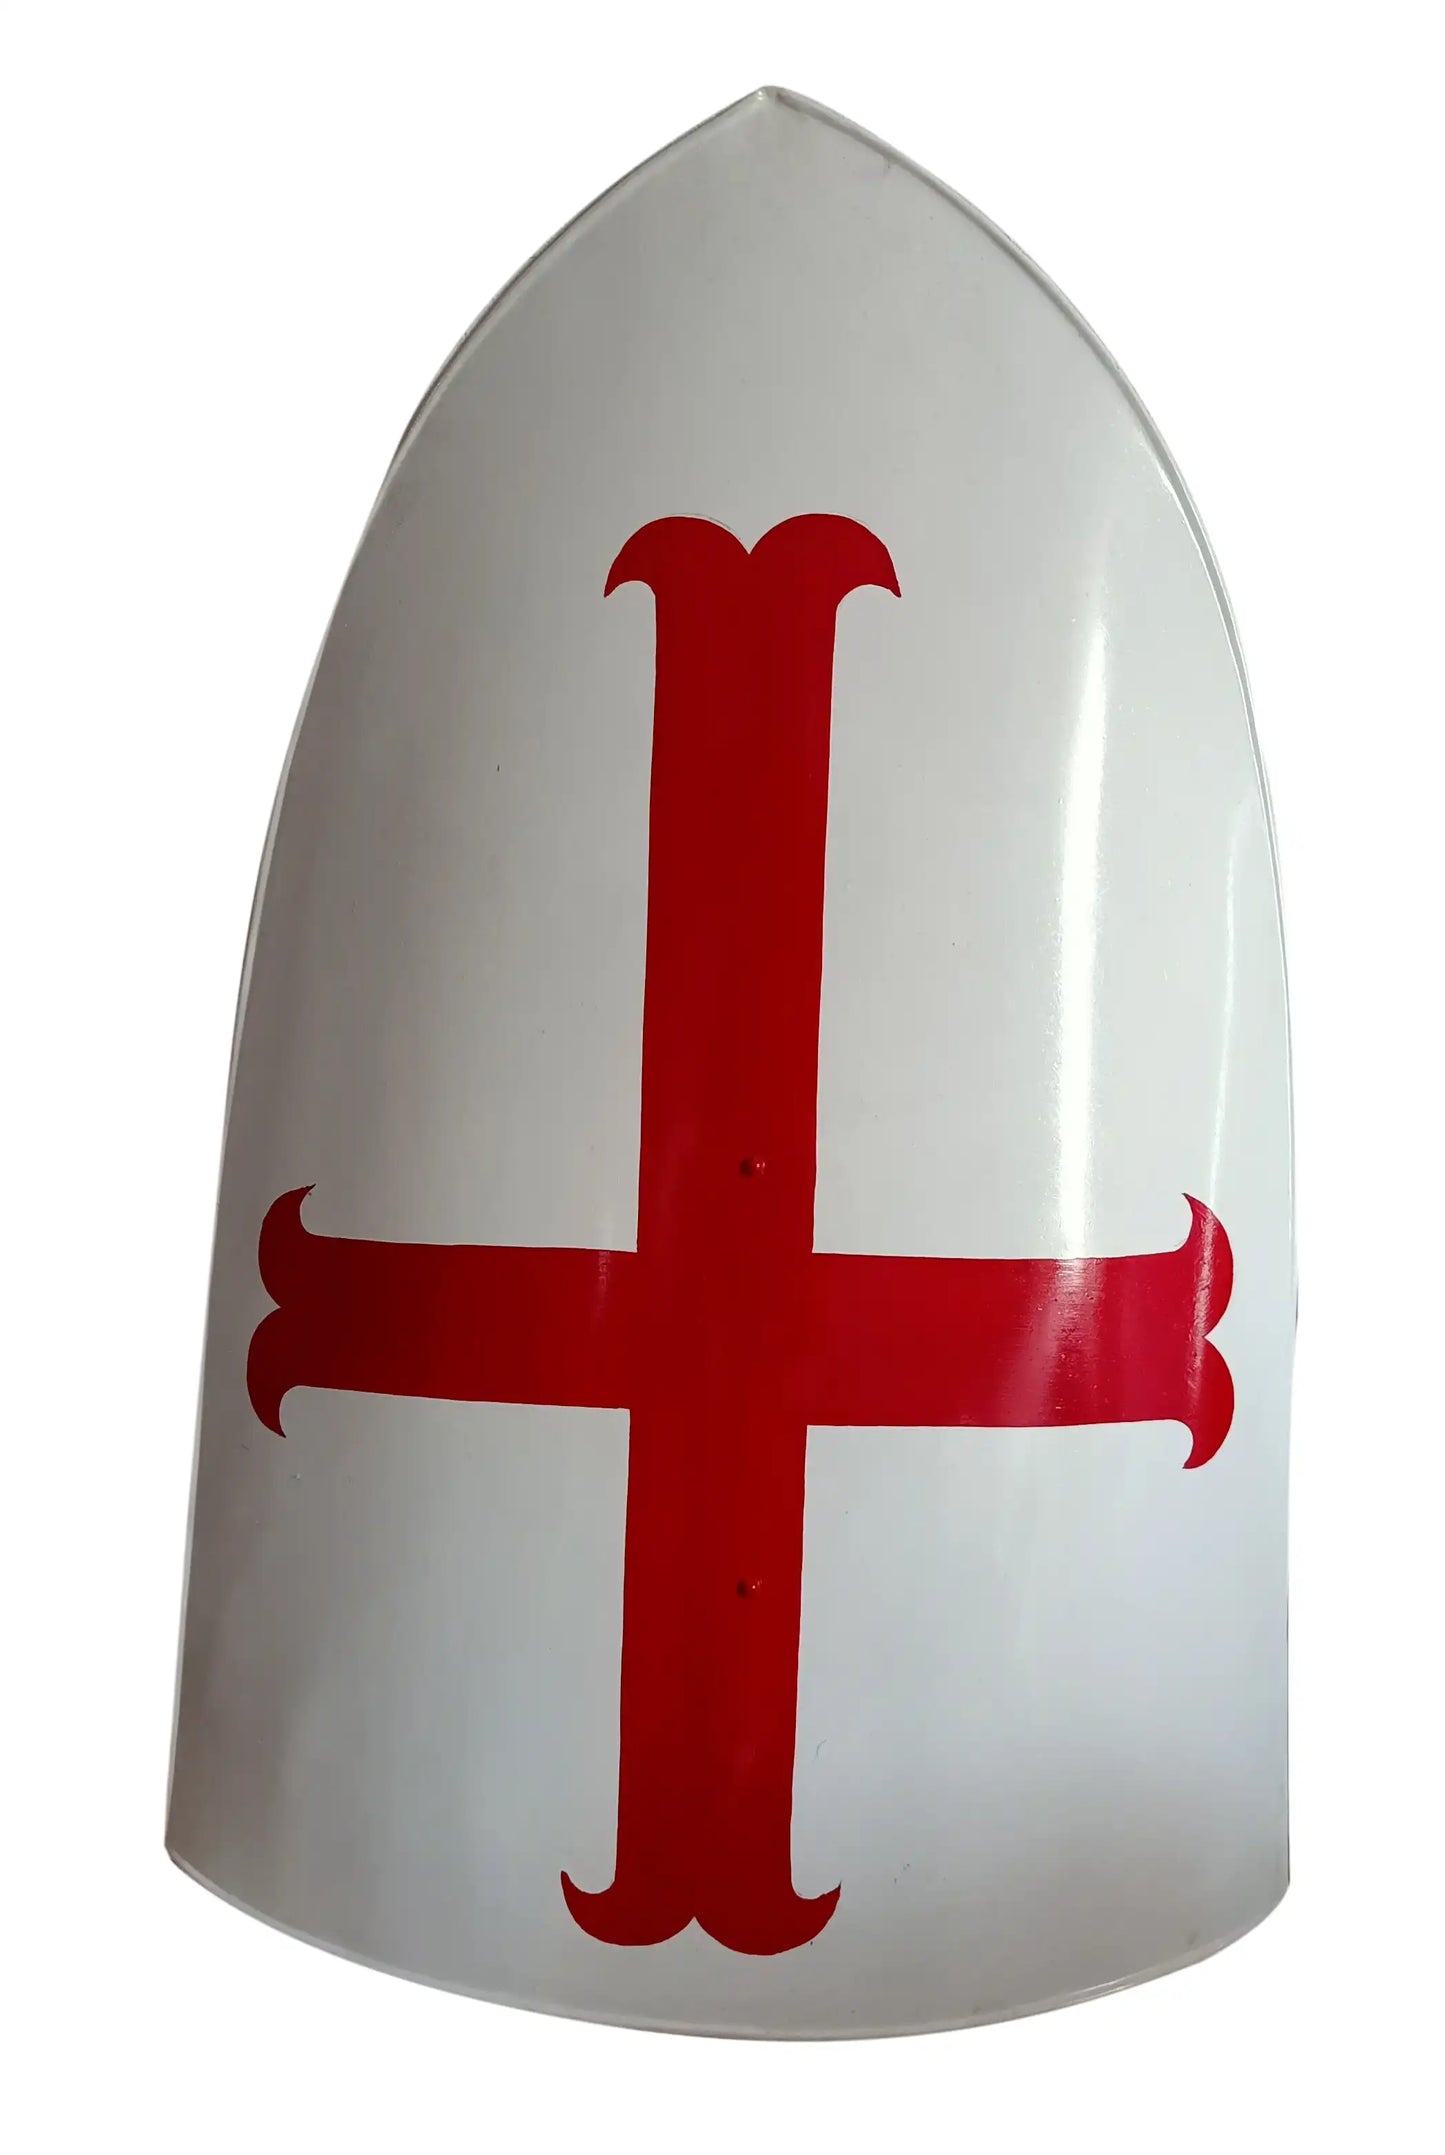 Medieval Templar Knight Red Cross Armor Shield